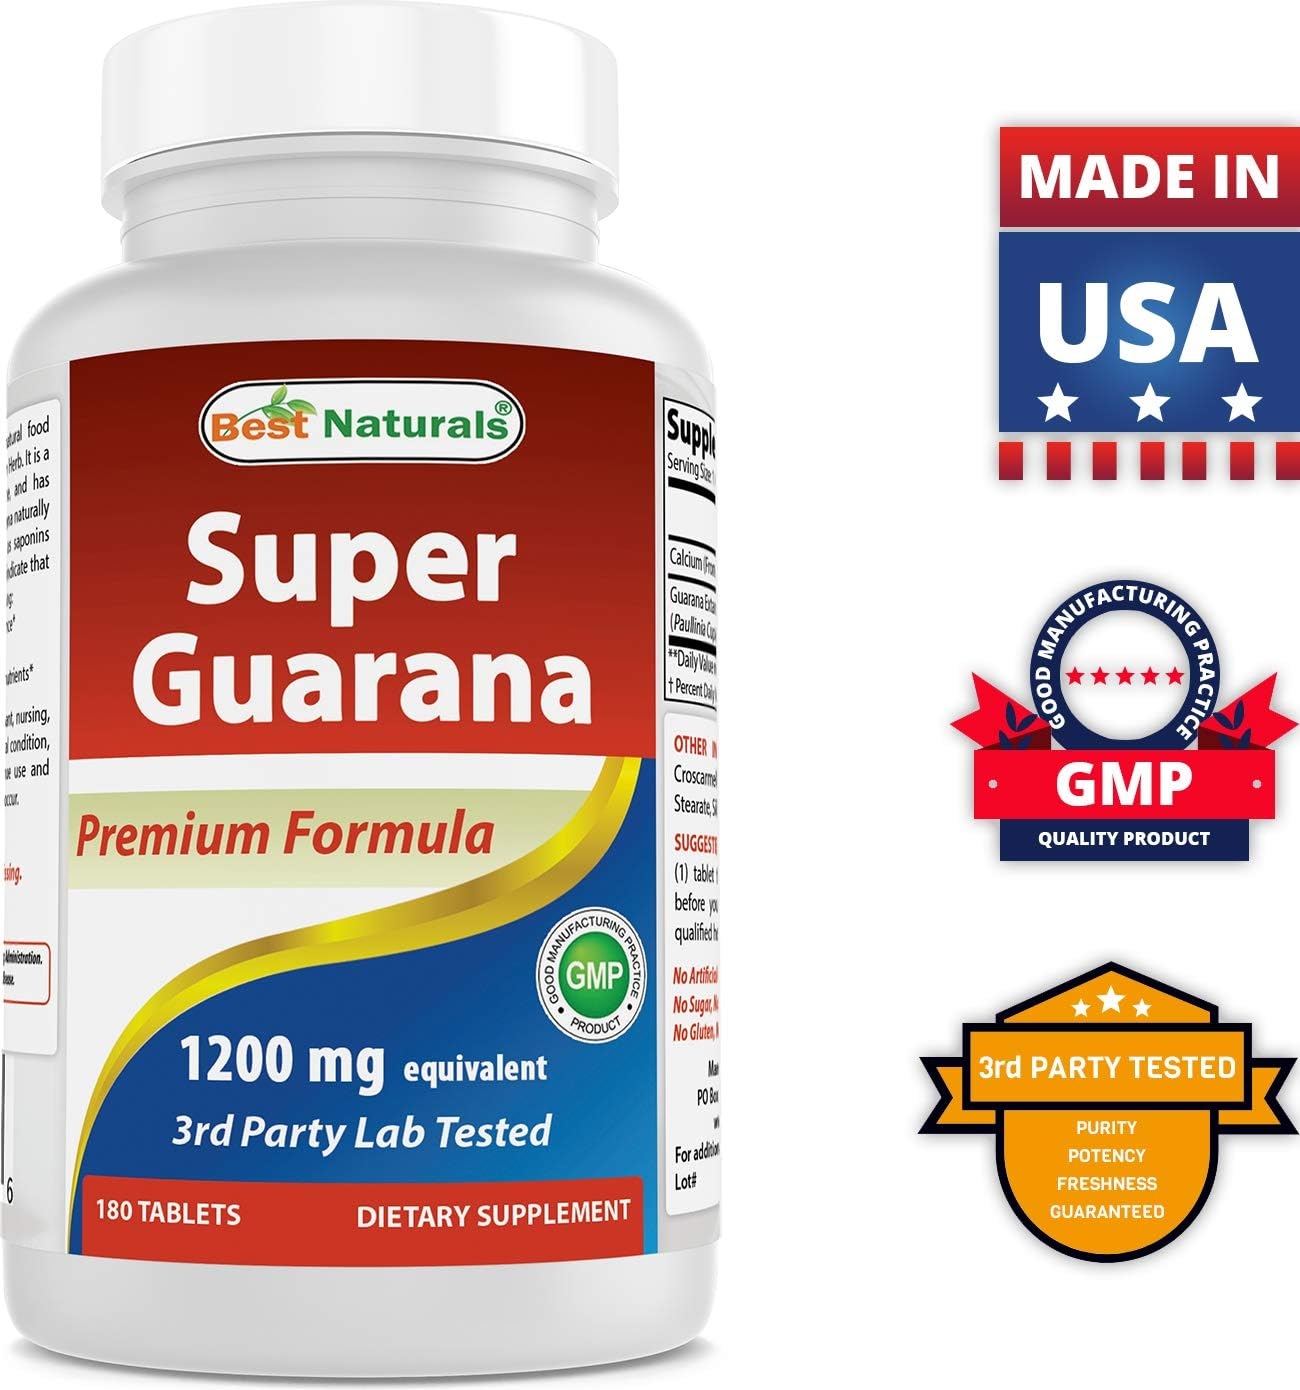 Best Naturals Super Guarana 1200 mg 180 Tablets